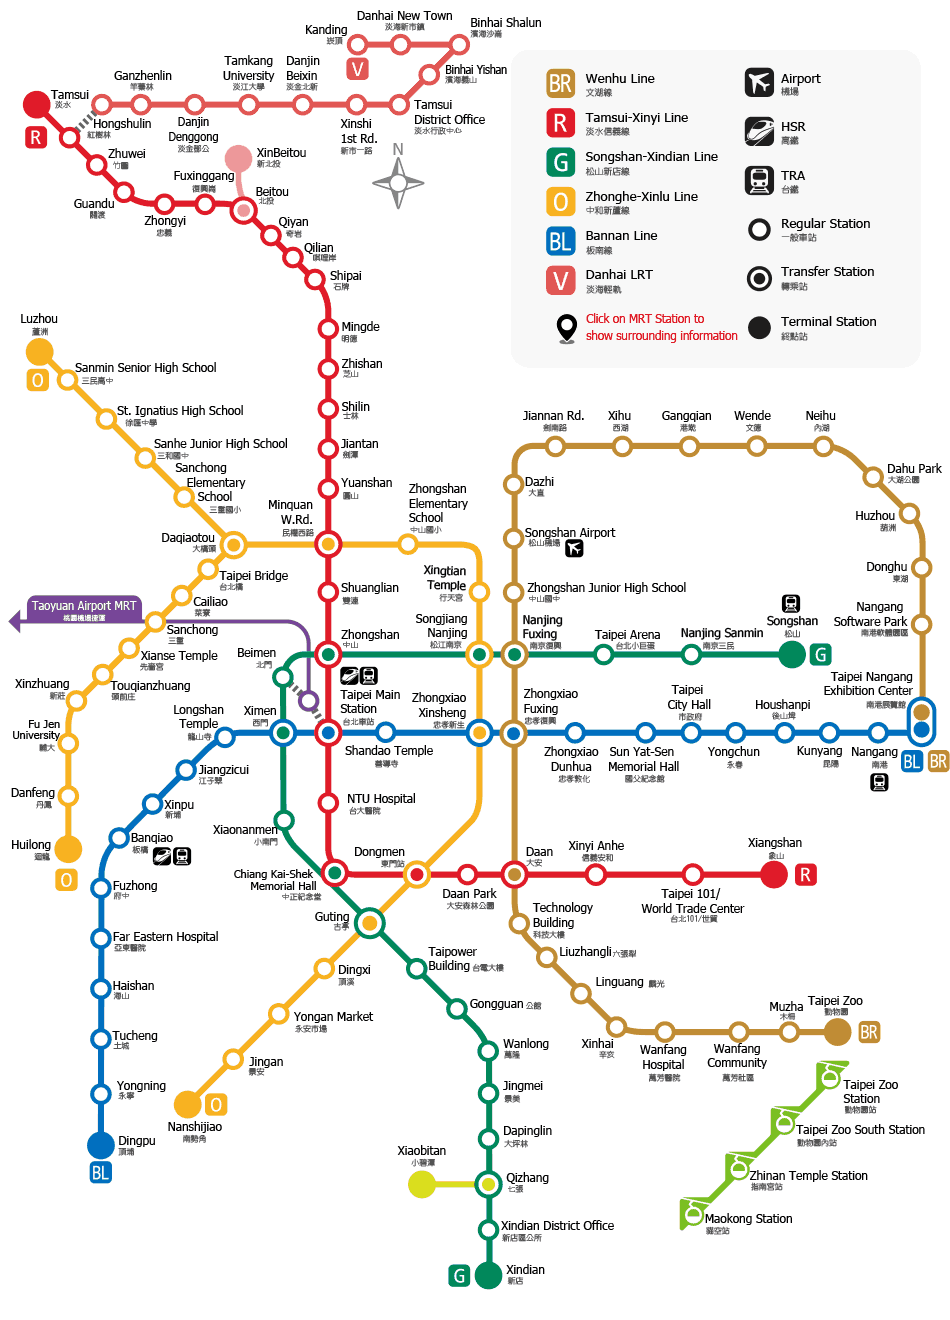 Mass Rapid Transit map of Taipei